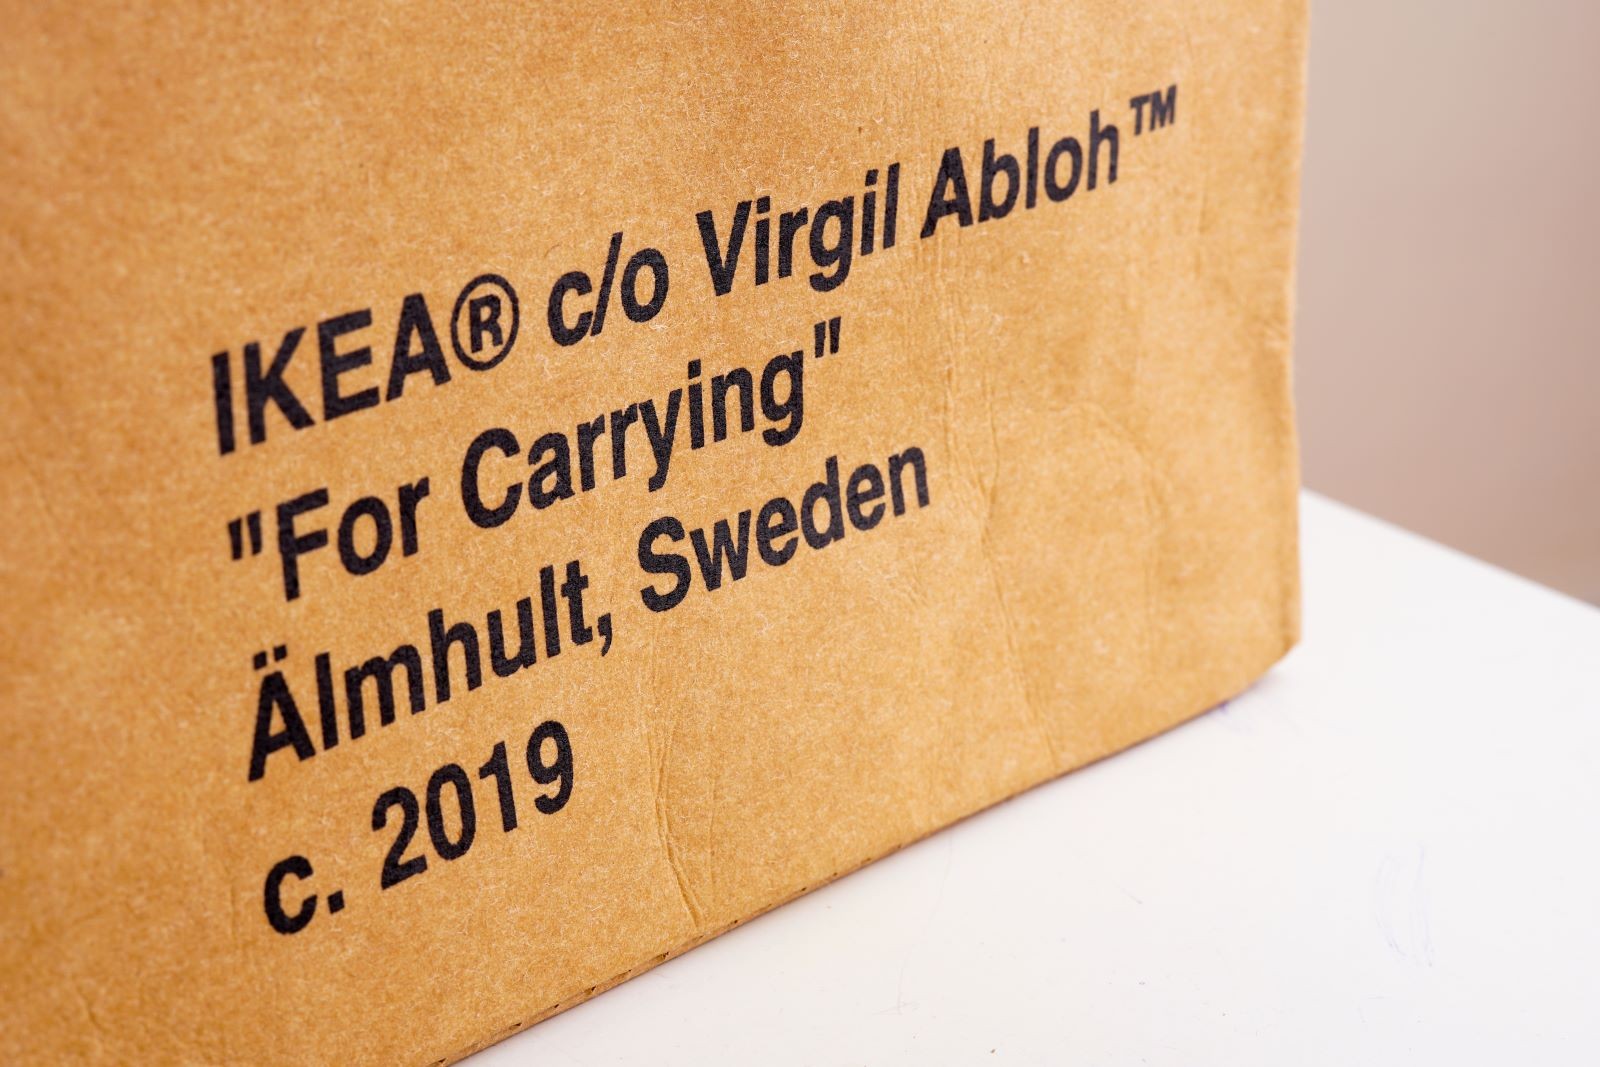 Η συνεργασία του Virgil Abloh με το IKEA